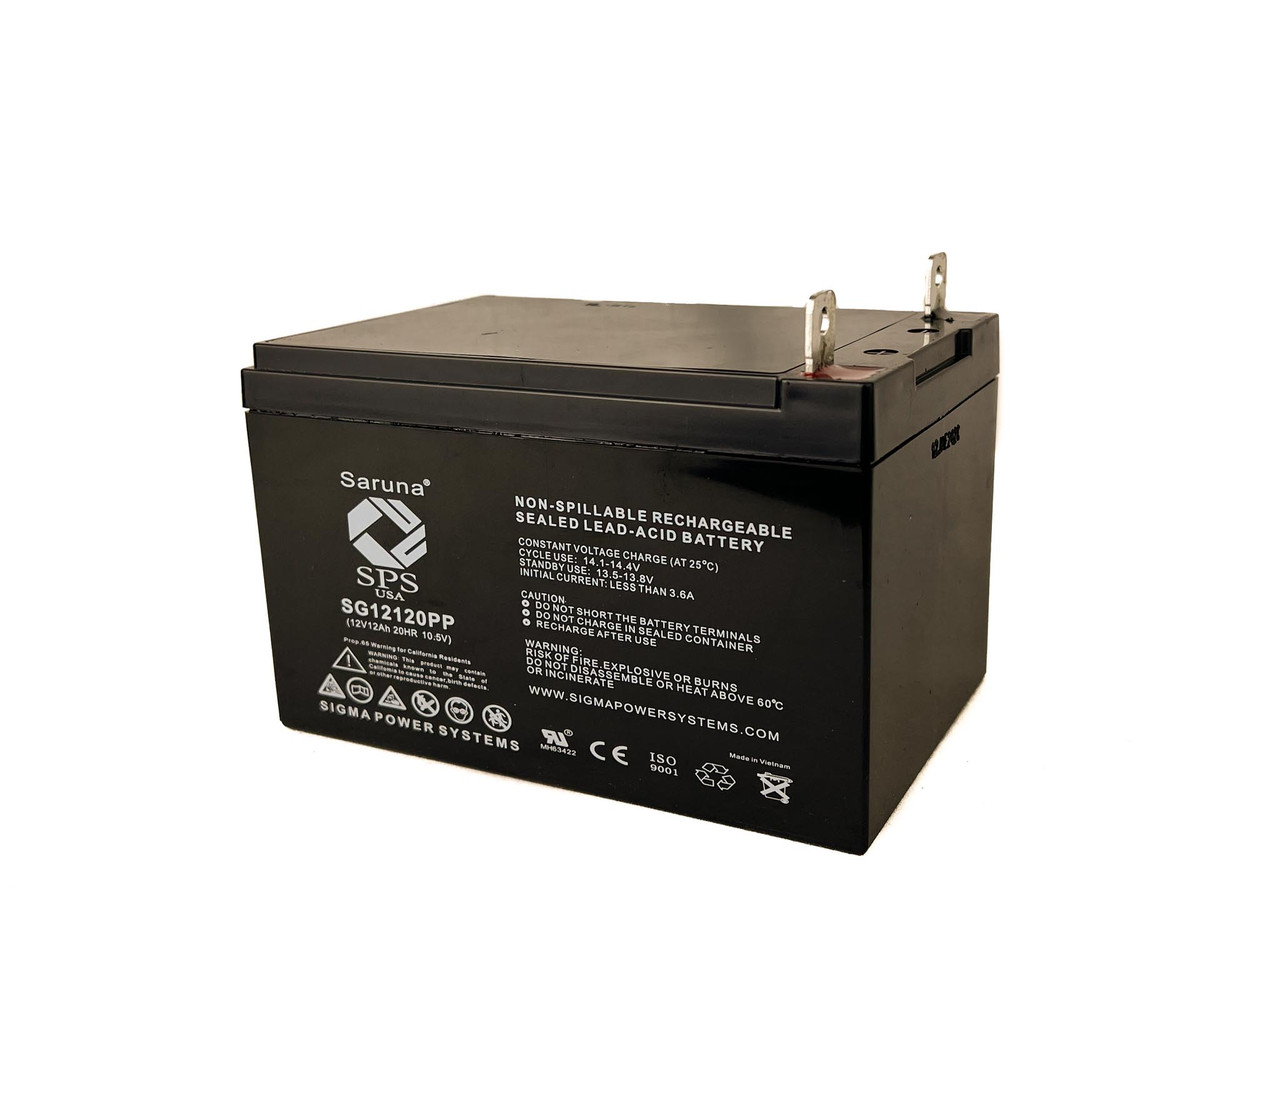 Raion Power RG12120PP Replacement Battery for Xantrex Technology POWERPACK 150 WATT INVERTER